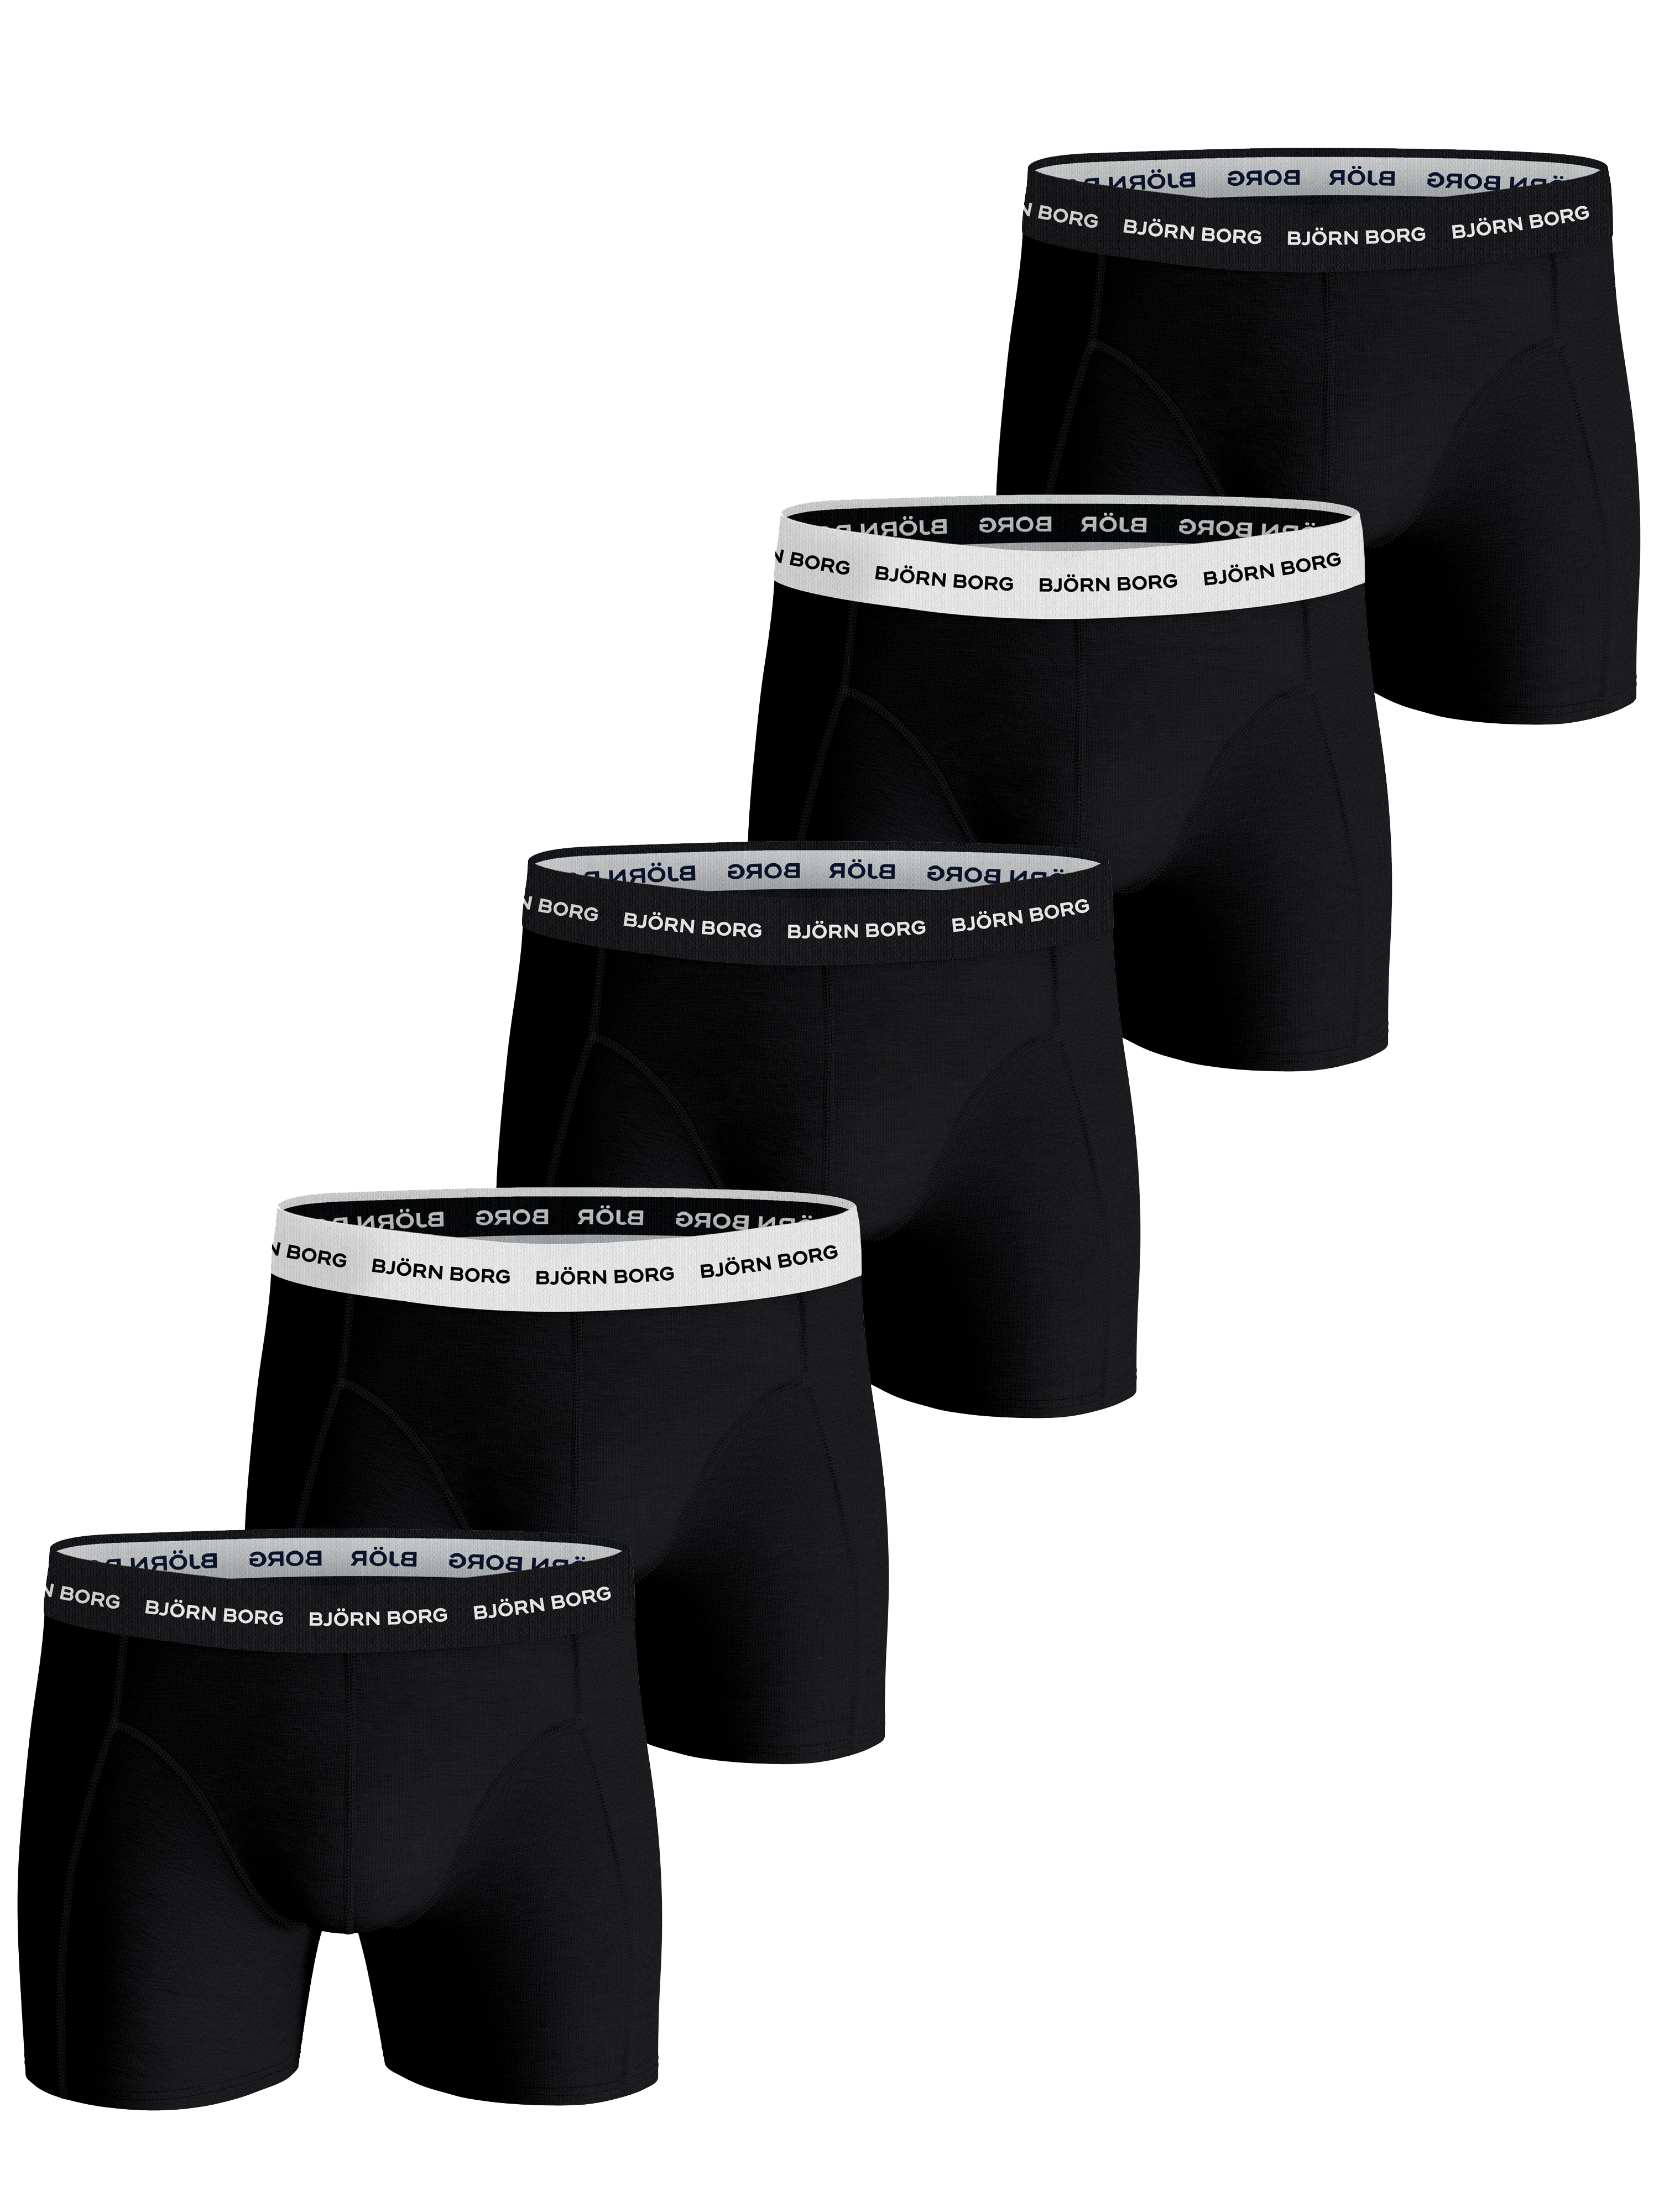 Men's Björn Borg Underwear from $21